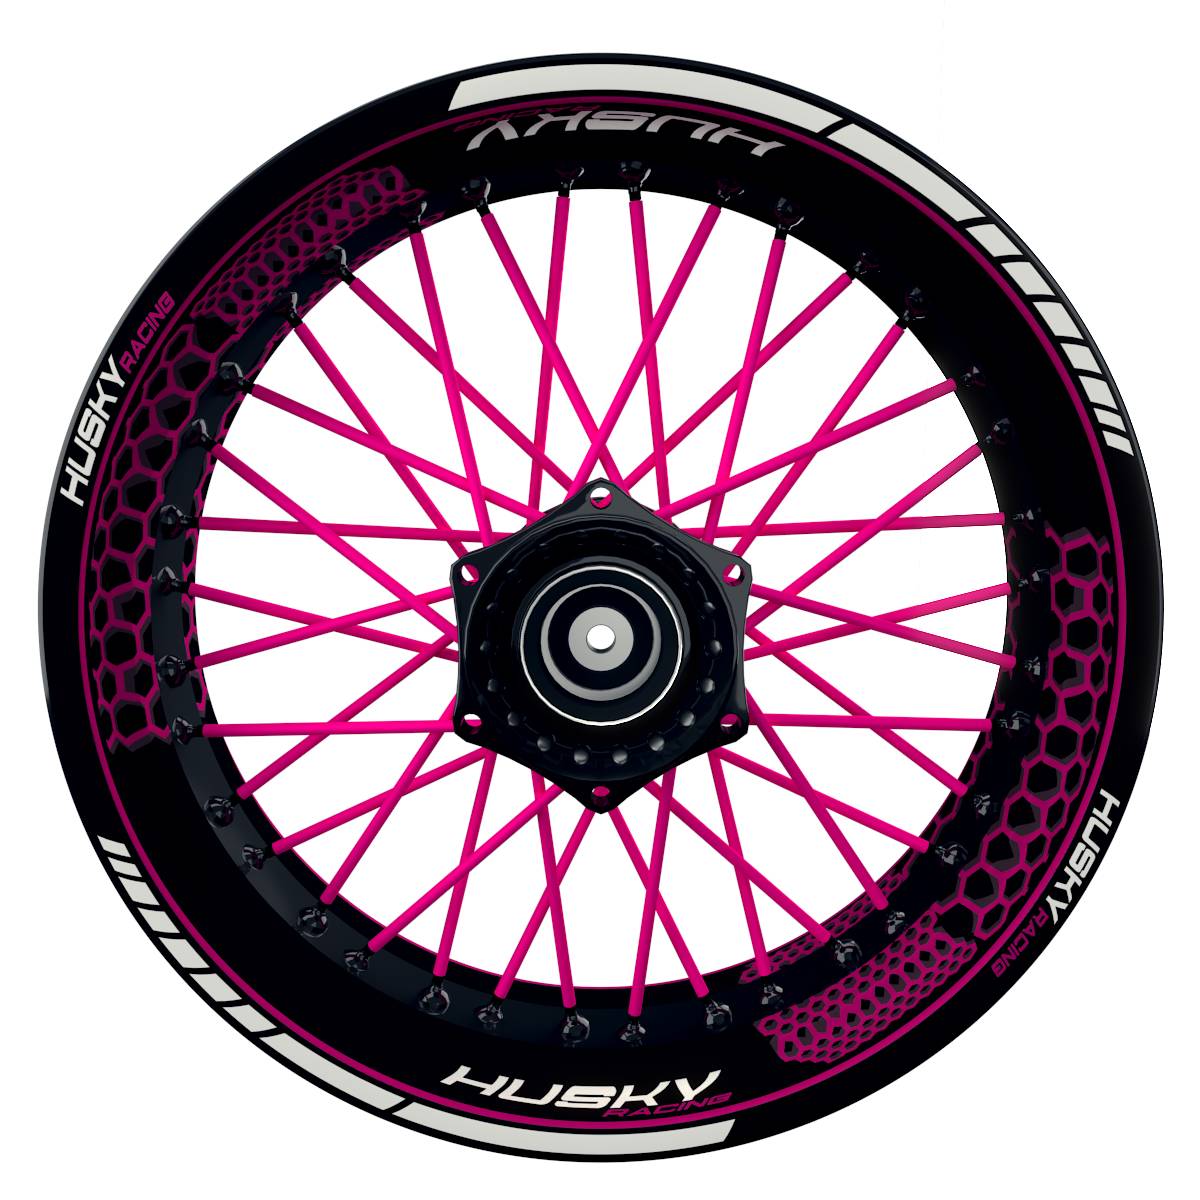 HuskyRACING Hexagon schwarz pink Wheelsticker Felgenaufkleber